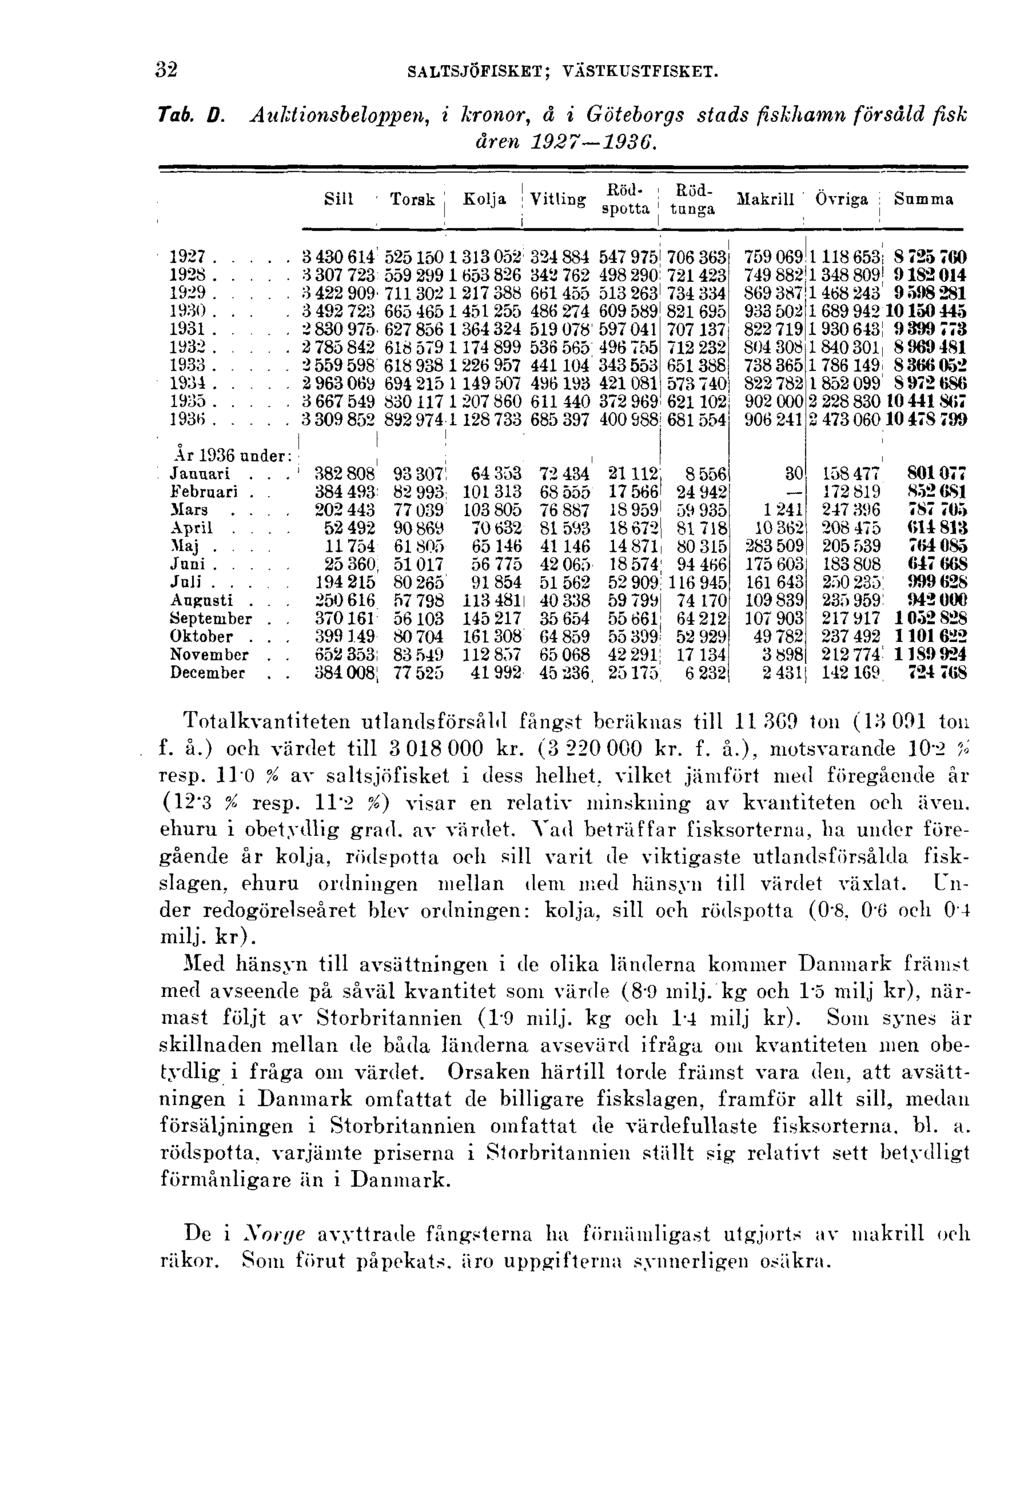 32 SALTSJÖFISKET; VÄSTKUSTFISKET. Tab. D. Auktionsbeloppen, i kronor, å i Göteborgs stads fiskhamn försåld fisk åren 1927 1936. Totalkvantiteten utlandsförsåld fångst beräknas till 11.